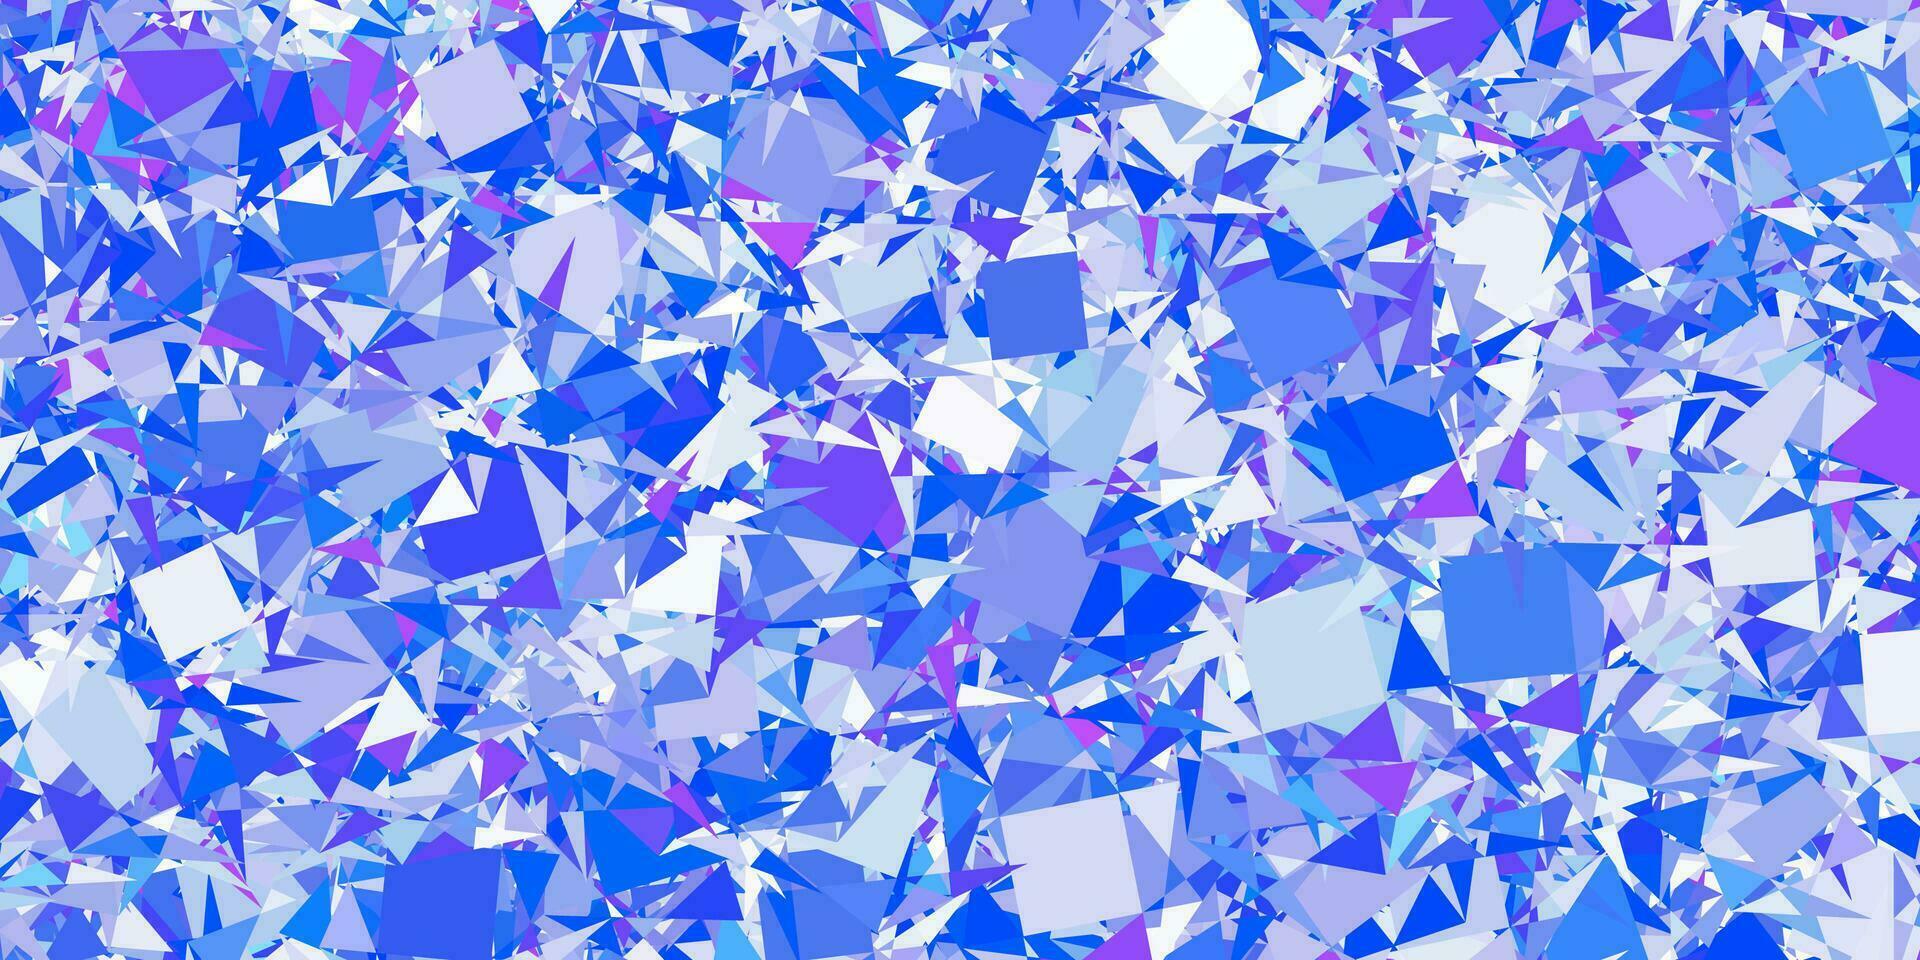 hellrosa, blauer Vektorhintergrund mit Dreiecken, Linien. vektor